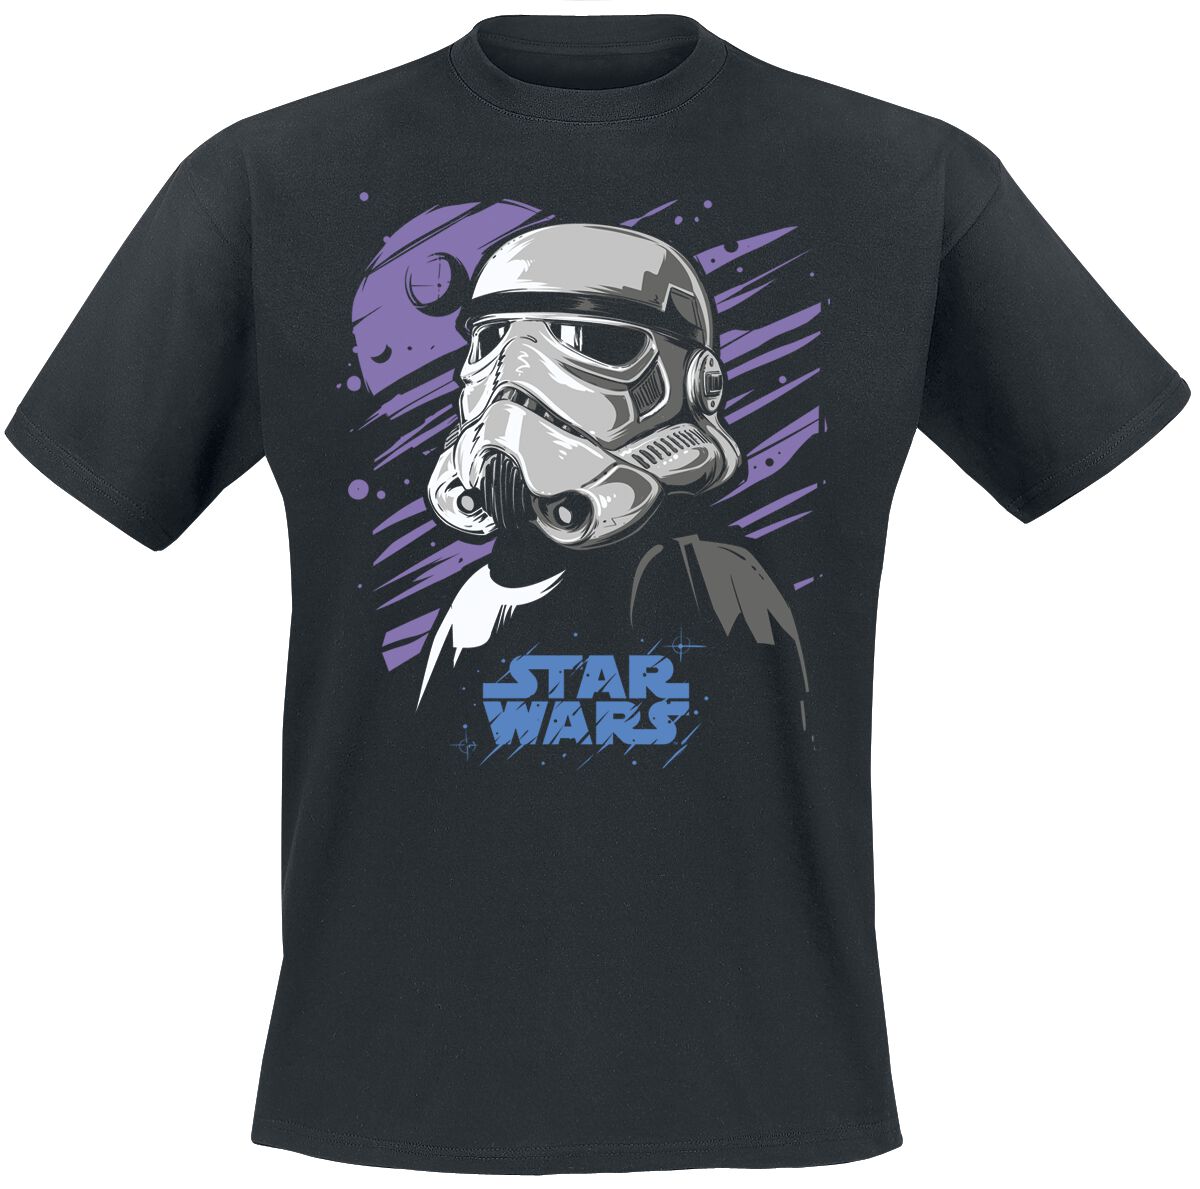 Star Wars T-Shirt - Galaxy Stormtrooper - M bis 5XL - für Männer - Größe 5XL - schwarz  - Lizenzierter Fanartikel